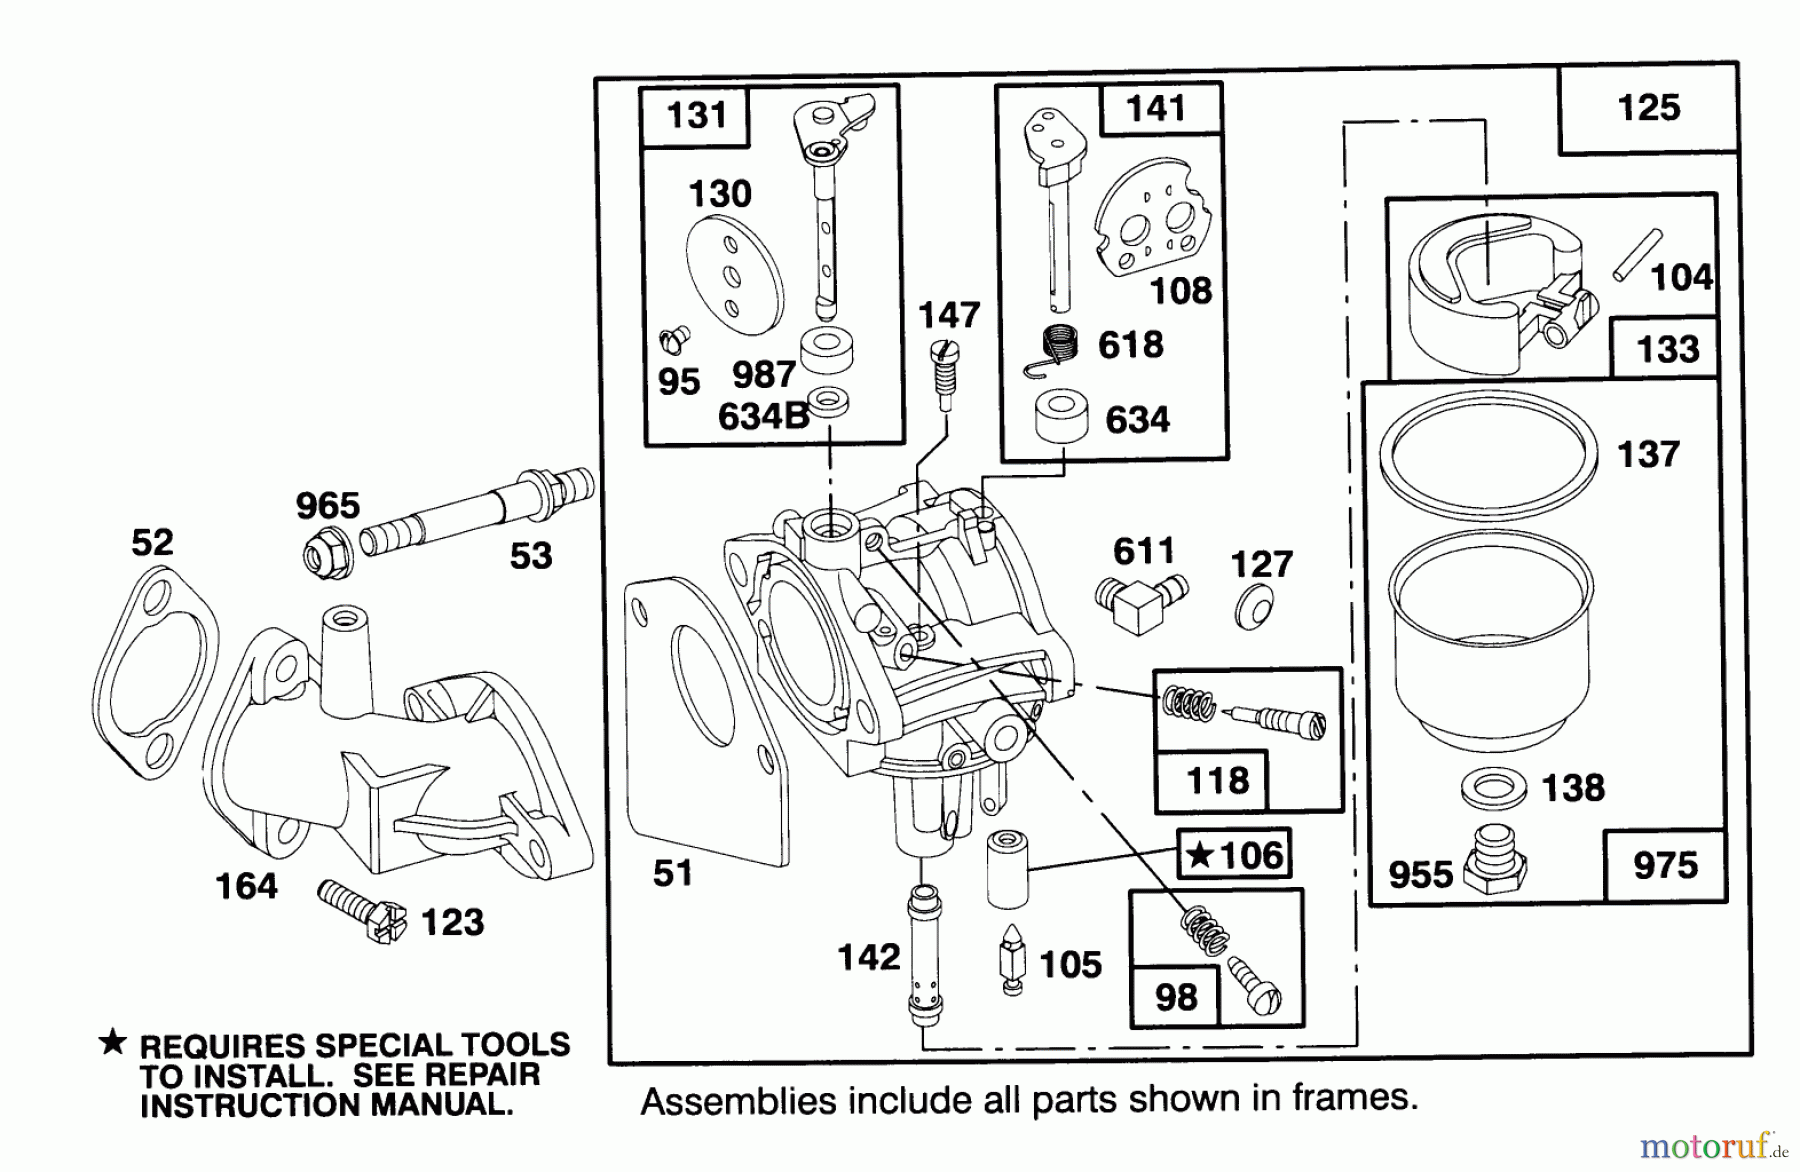  Toro Neu Mowers, Lawn & Garden Tractor Seite 1 71191 (13-38HXL) - Toro 13-38HXL Lawn Tractor, 1995 (5910001-5999999) ENGINE BRIGGS & STRATTON MODEL 28M707-0122-01 #3